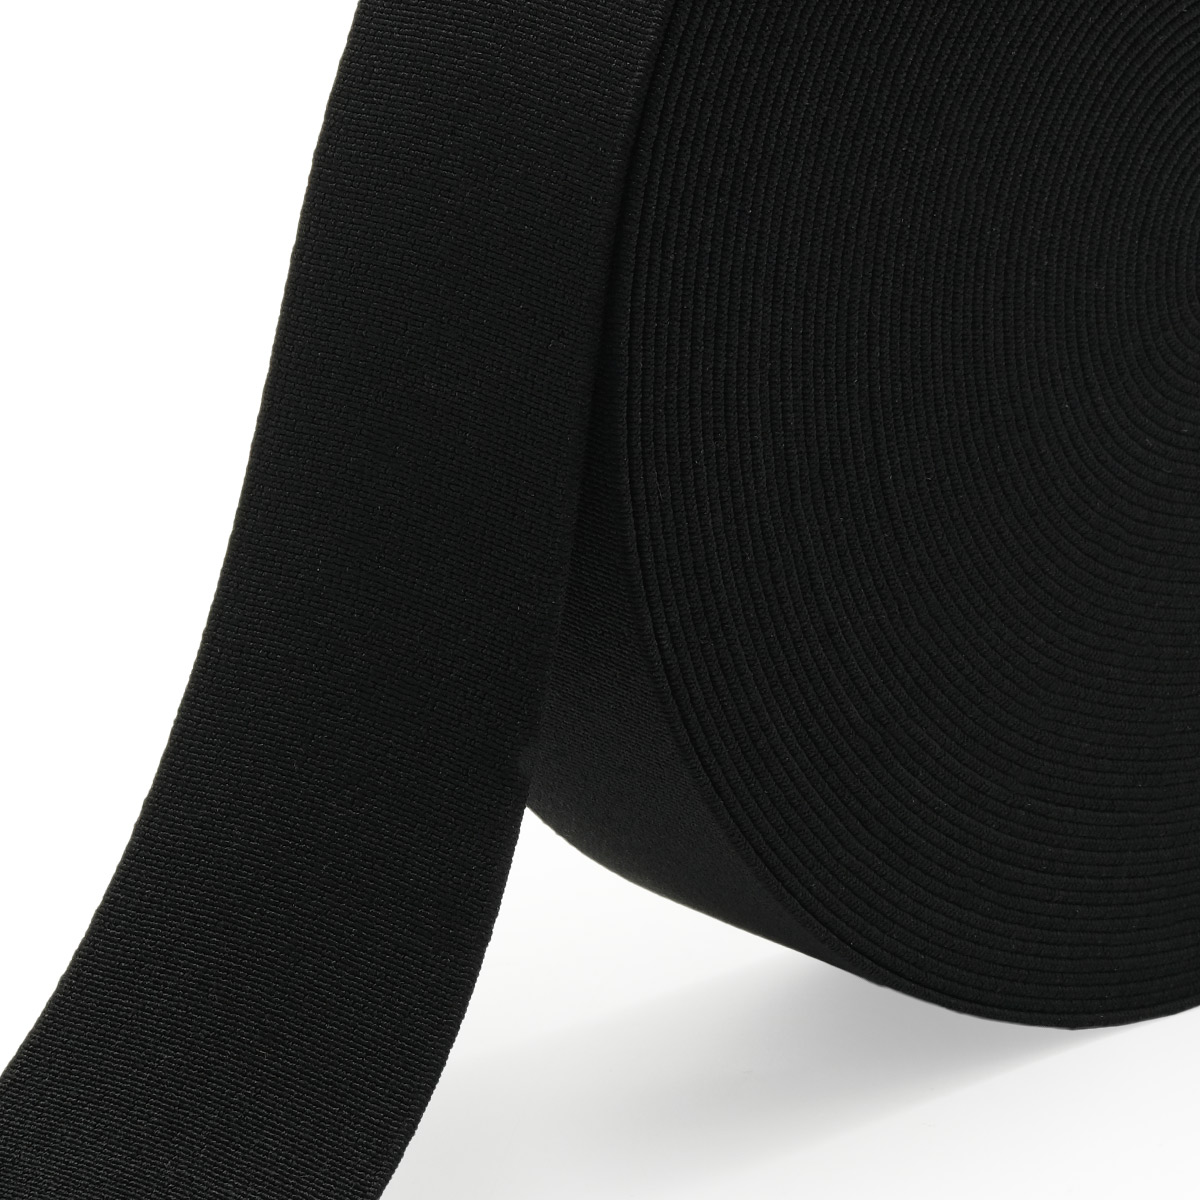 Лента Айрис резинка тканая эластичная башмачная для шитья челси чешек слипонов 50 мм 20 м черная - фото 4